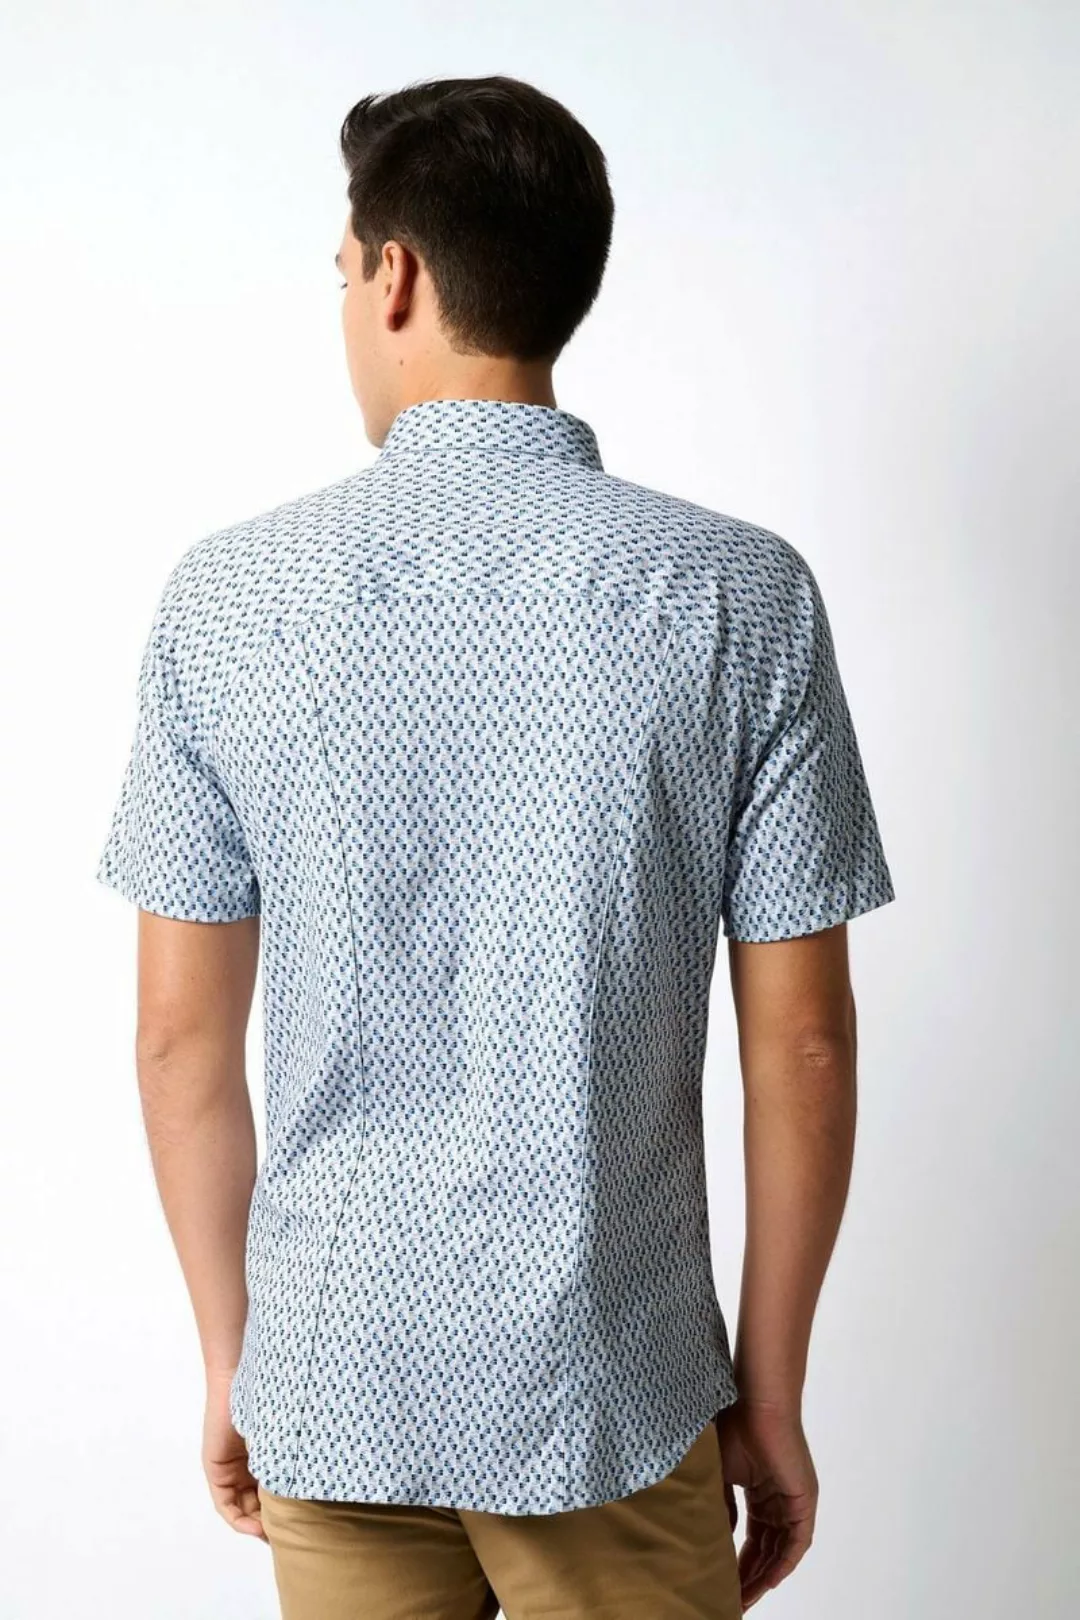 Desoto Kurzarmhemd stark tailliert bügelfrei Kentkragen günstig online kaufen